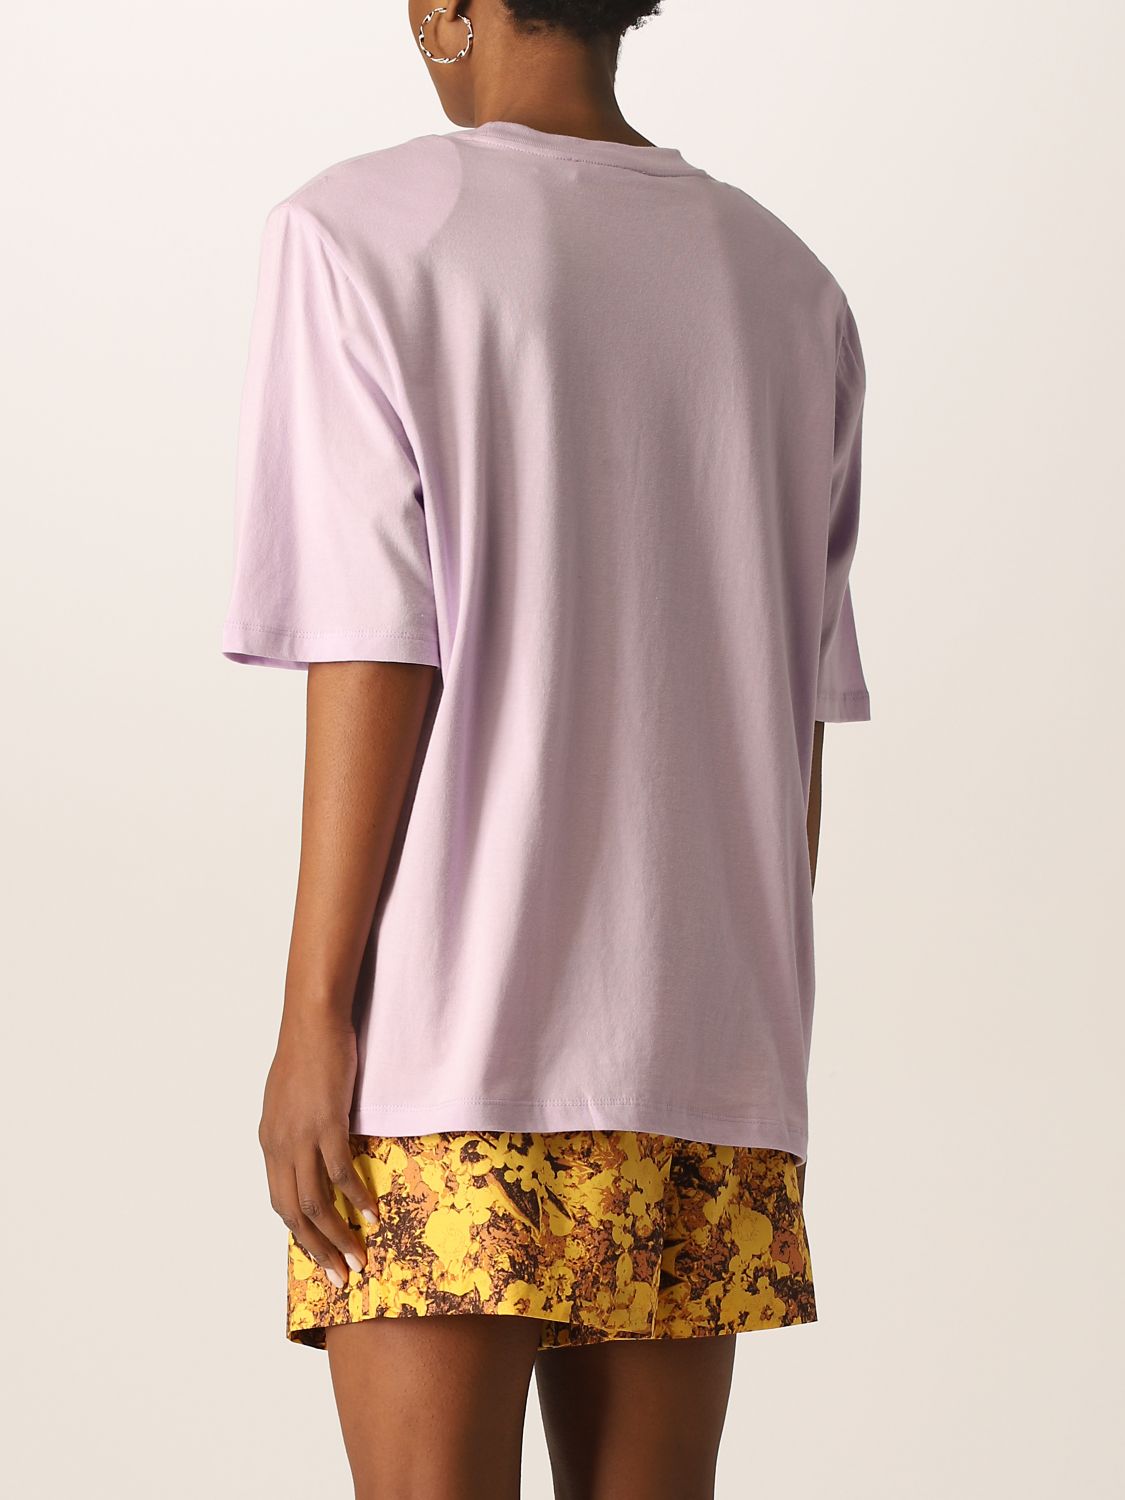 T-shirt Remain: Remain Damen t-shirt violett 3